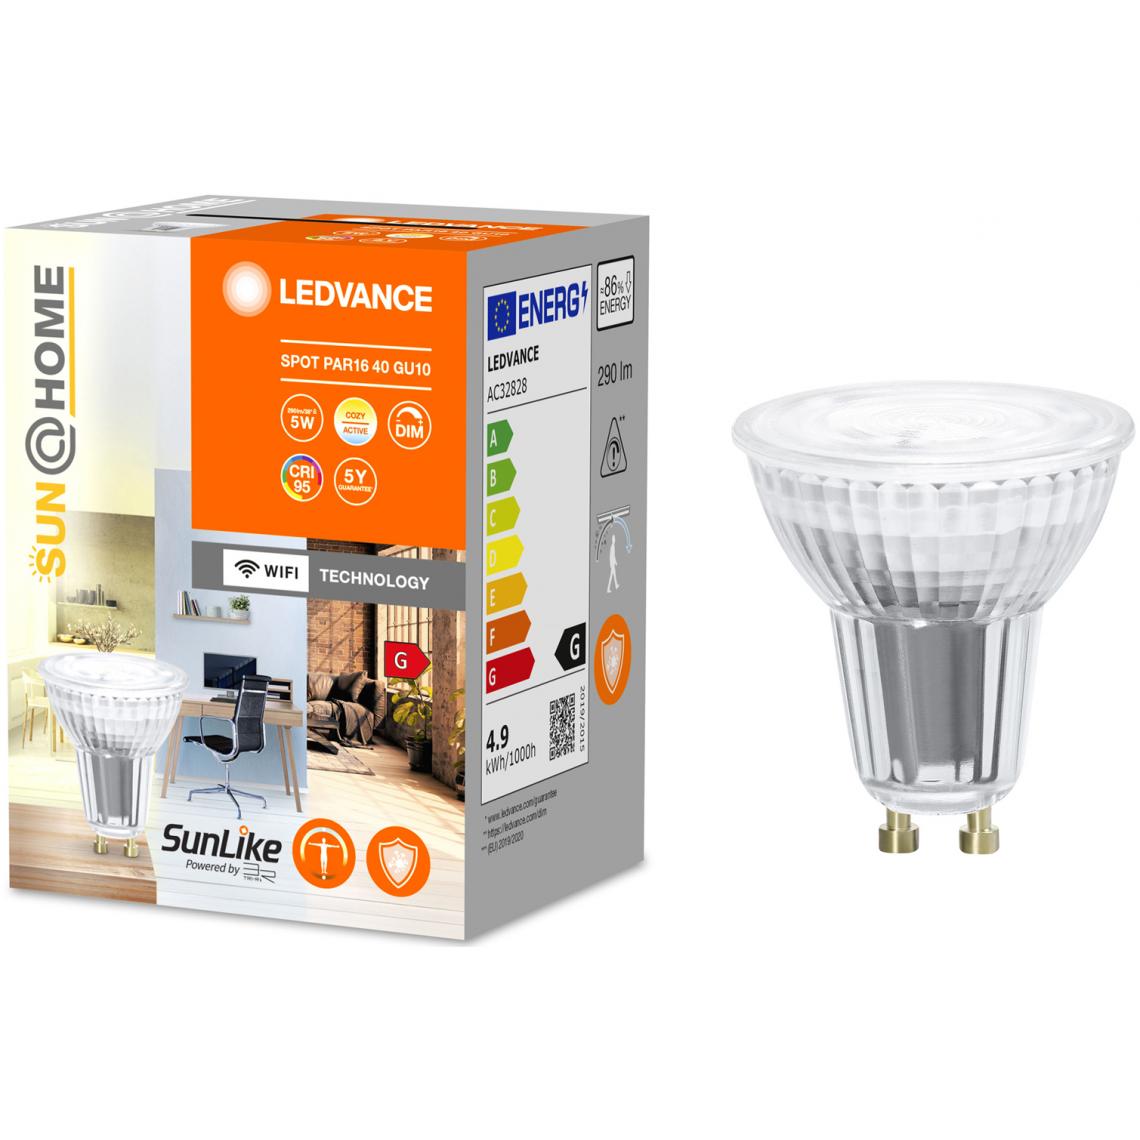 Ledvance - Ampoule connectée Smart+Sun@home spot 50W GU10 - Variation de blancs - Ampoule connectée